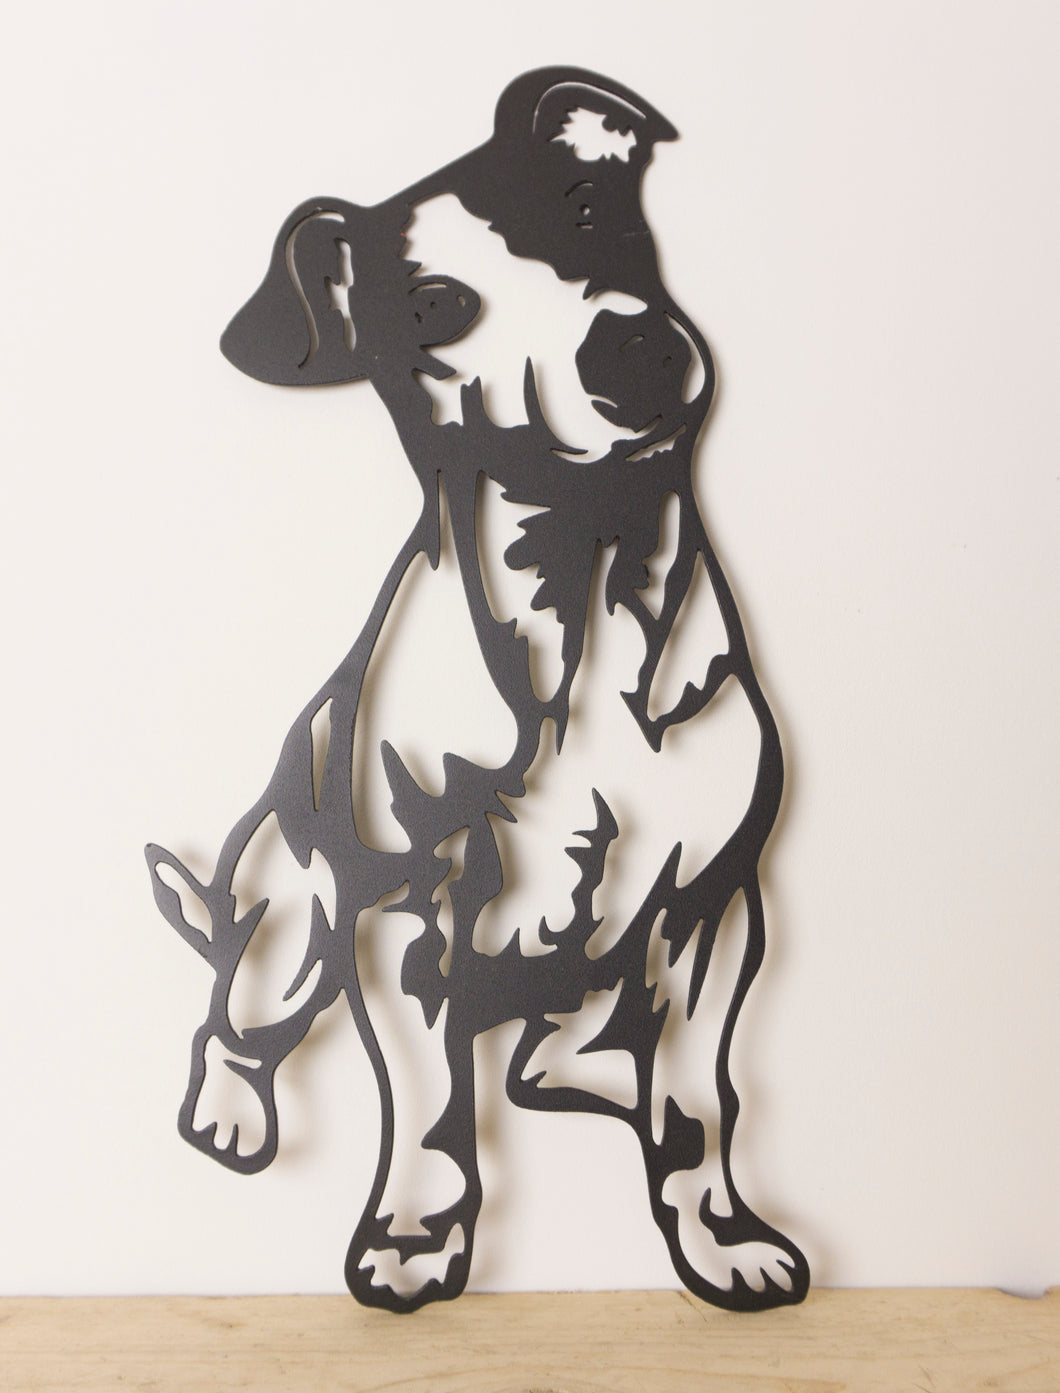 Jack Russell Dog Wall Art / Garden Art - Unique Metalcraft